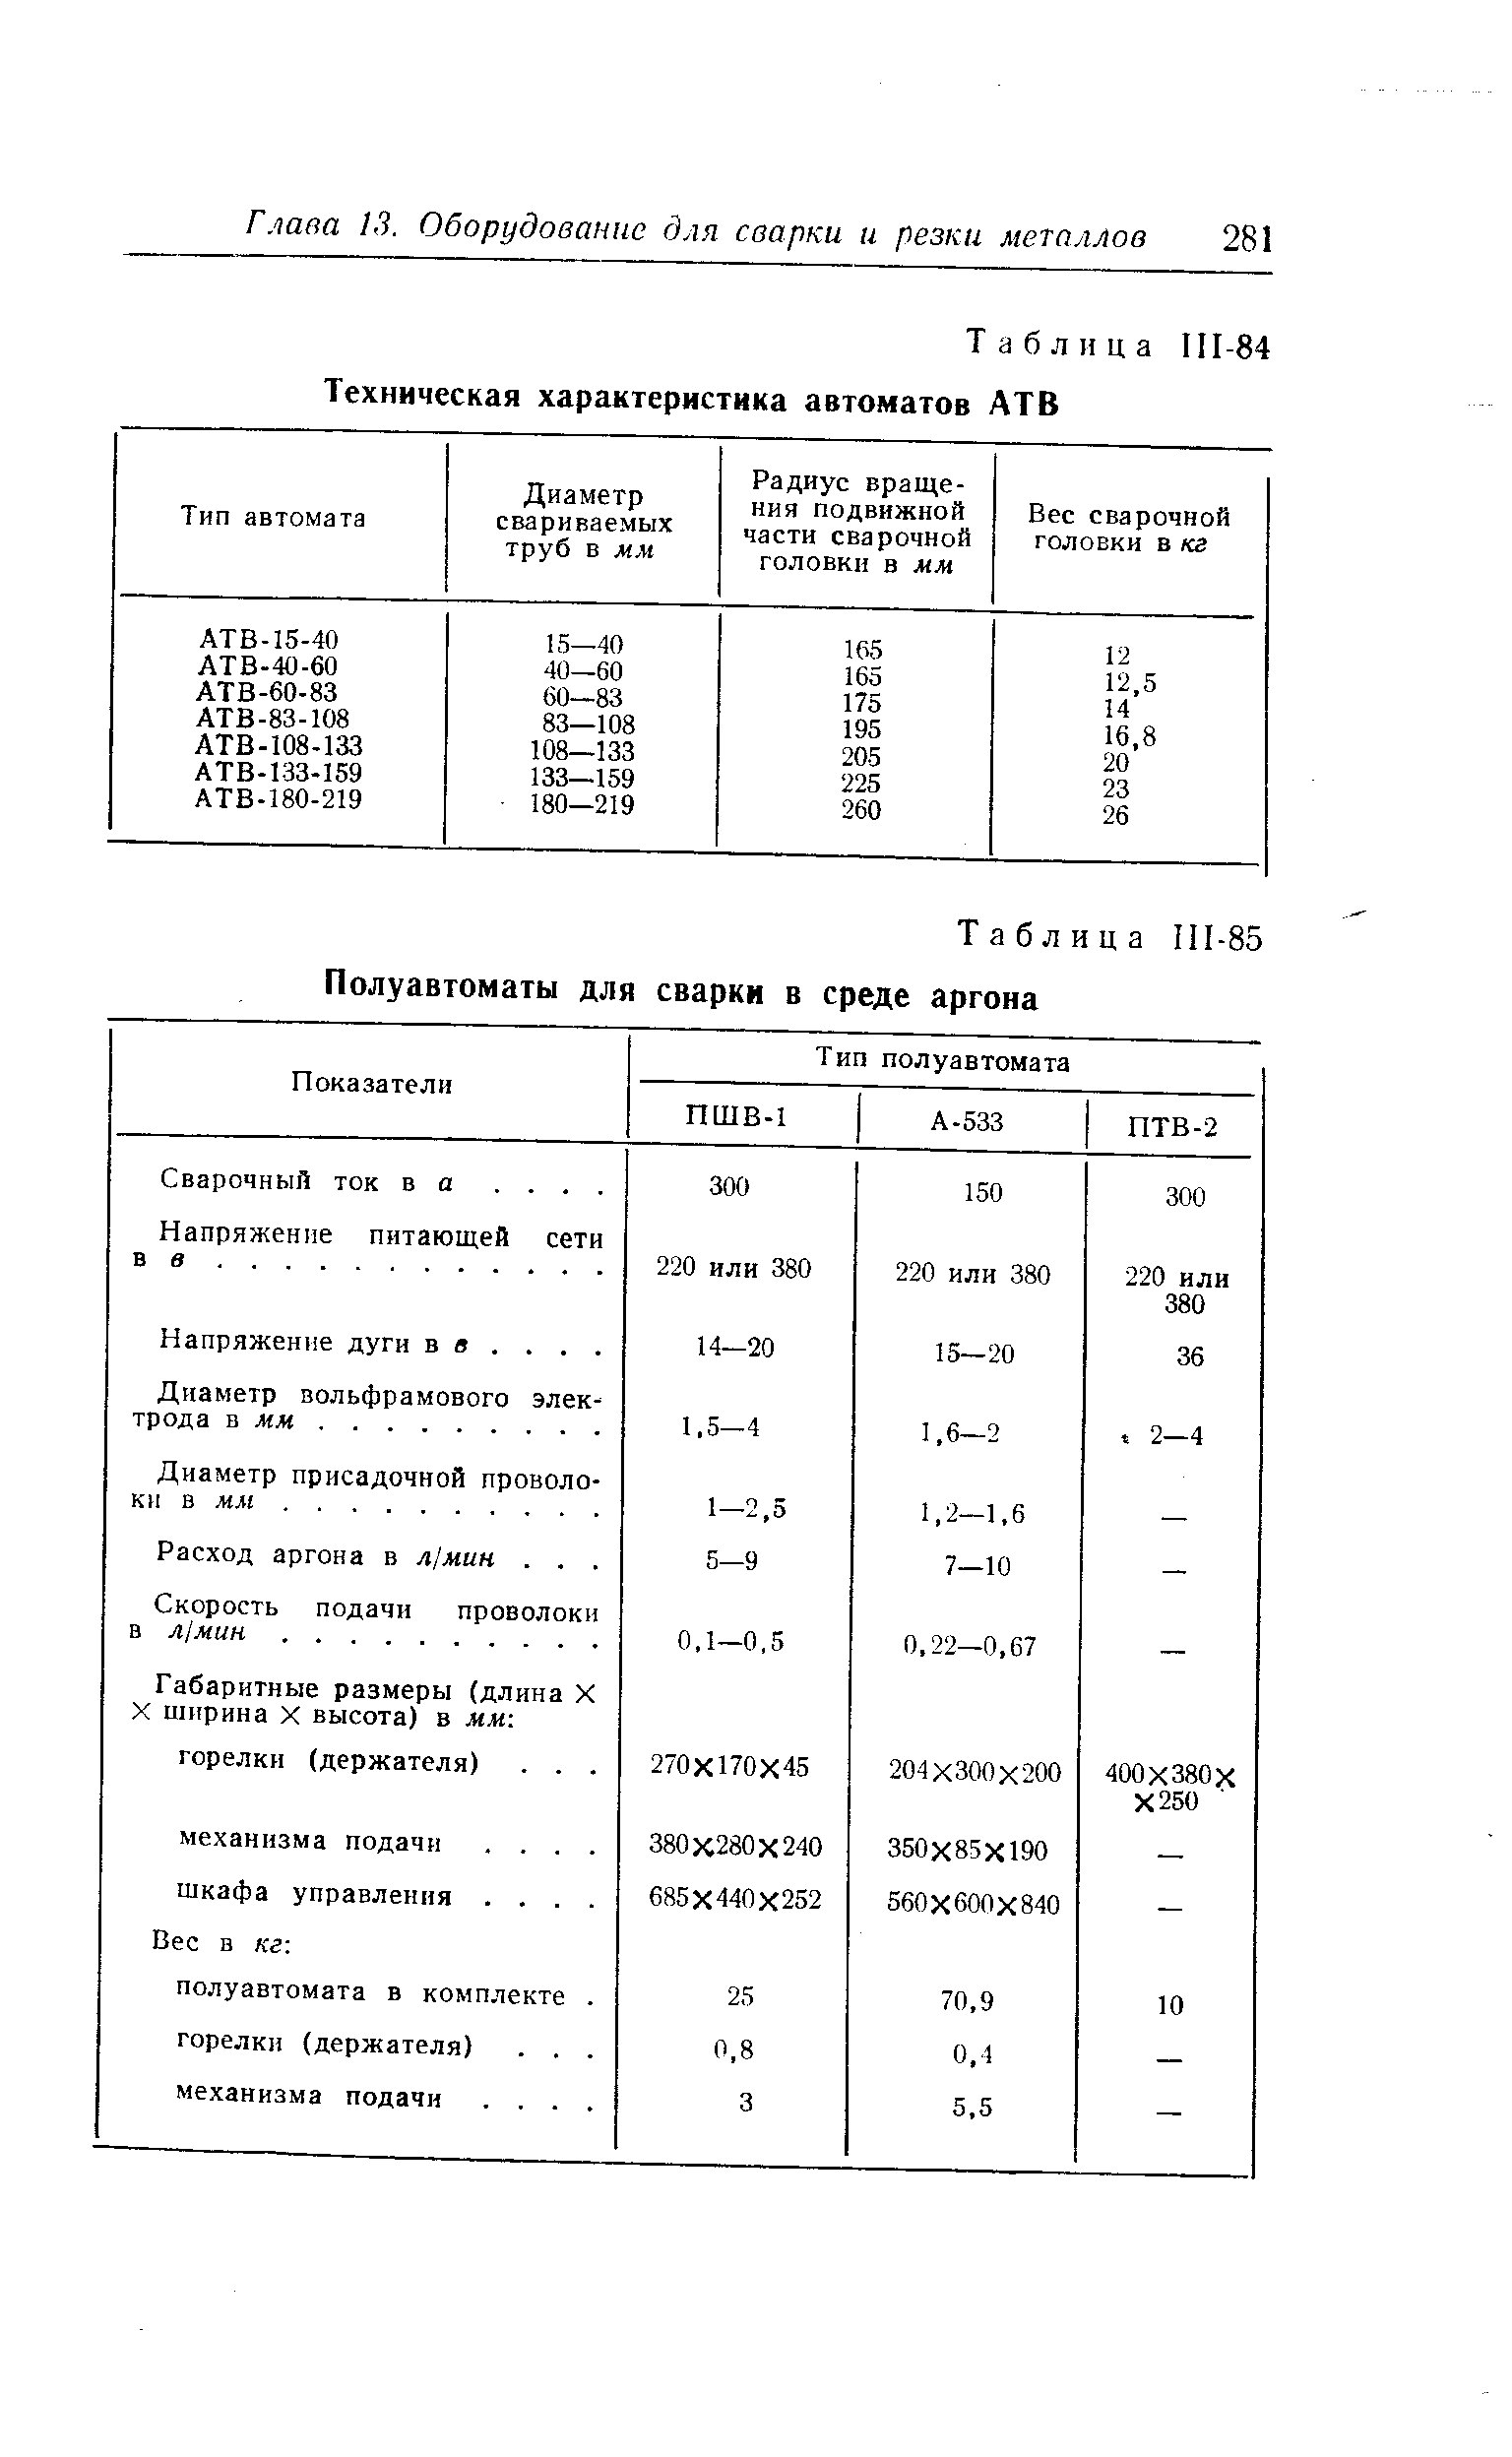 Таблица II1-85 Полуавтоматы для сварки в среде аргона
